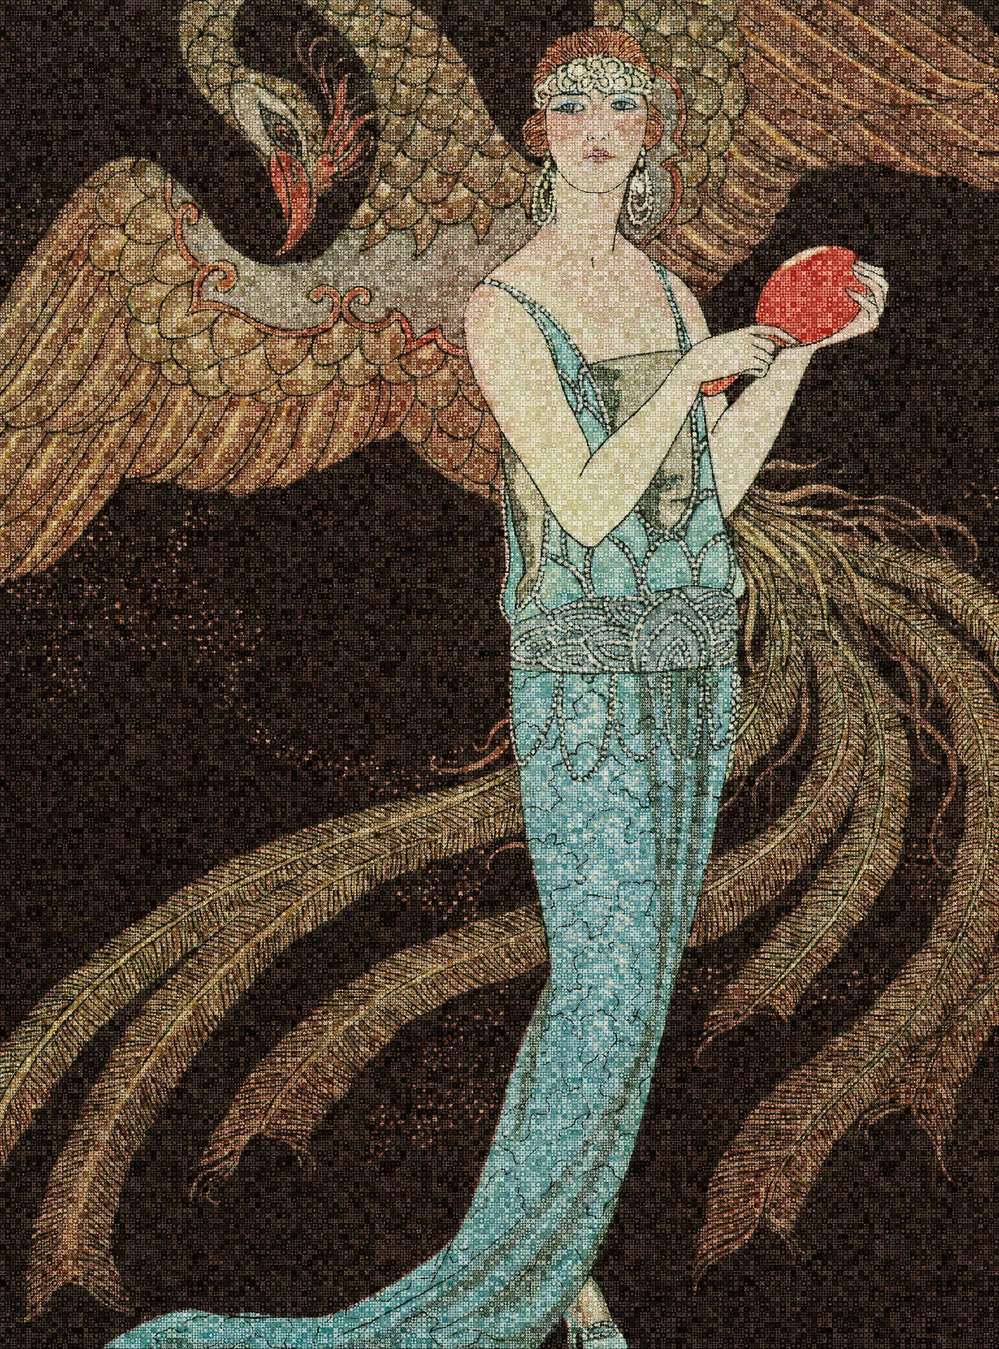             Scala 1 - Carta da parati Art Deco a mosaico con fenice e donna
        